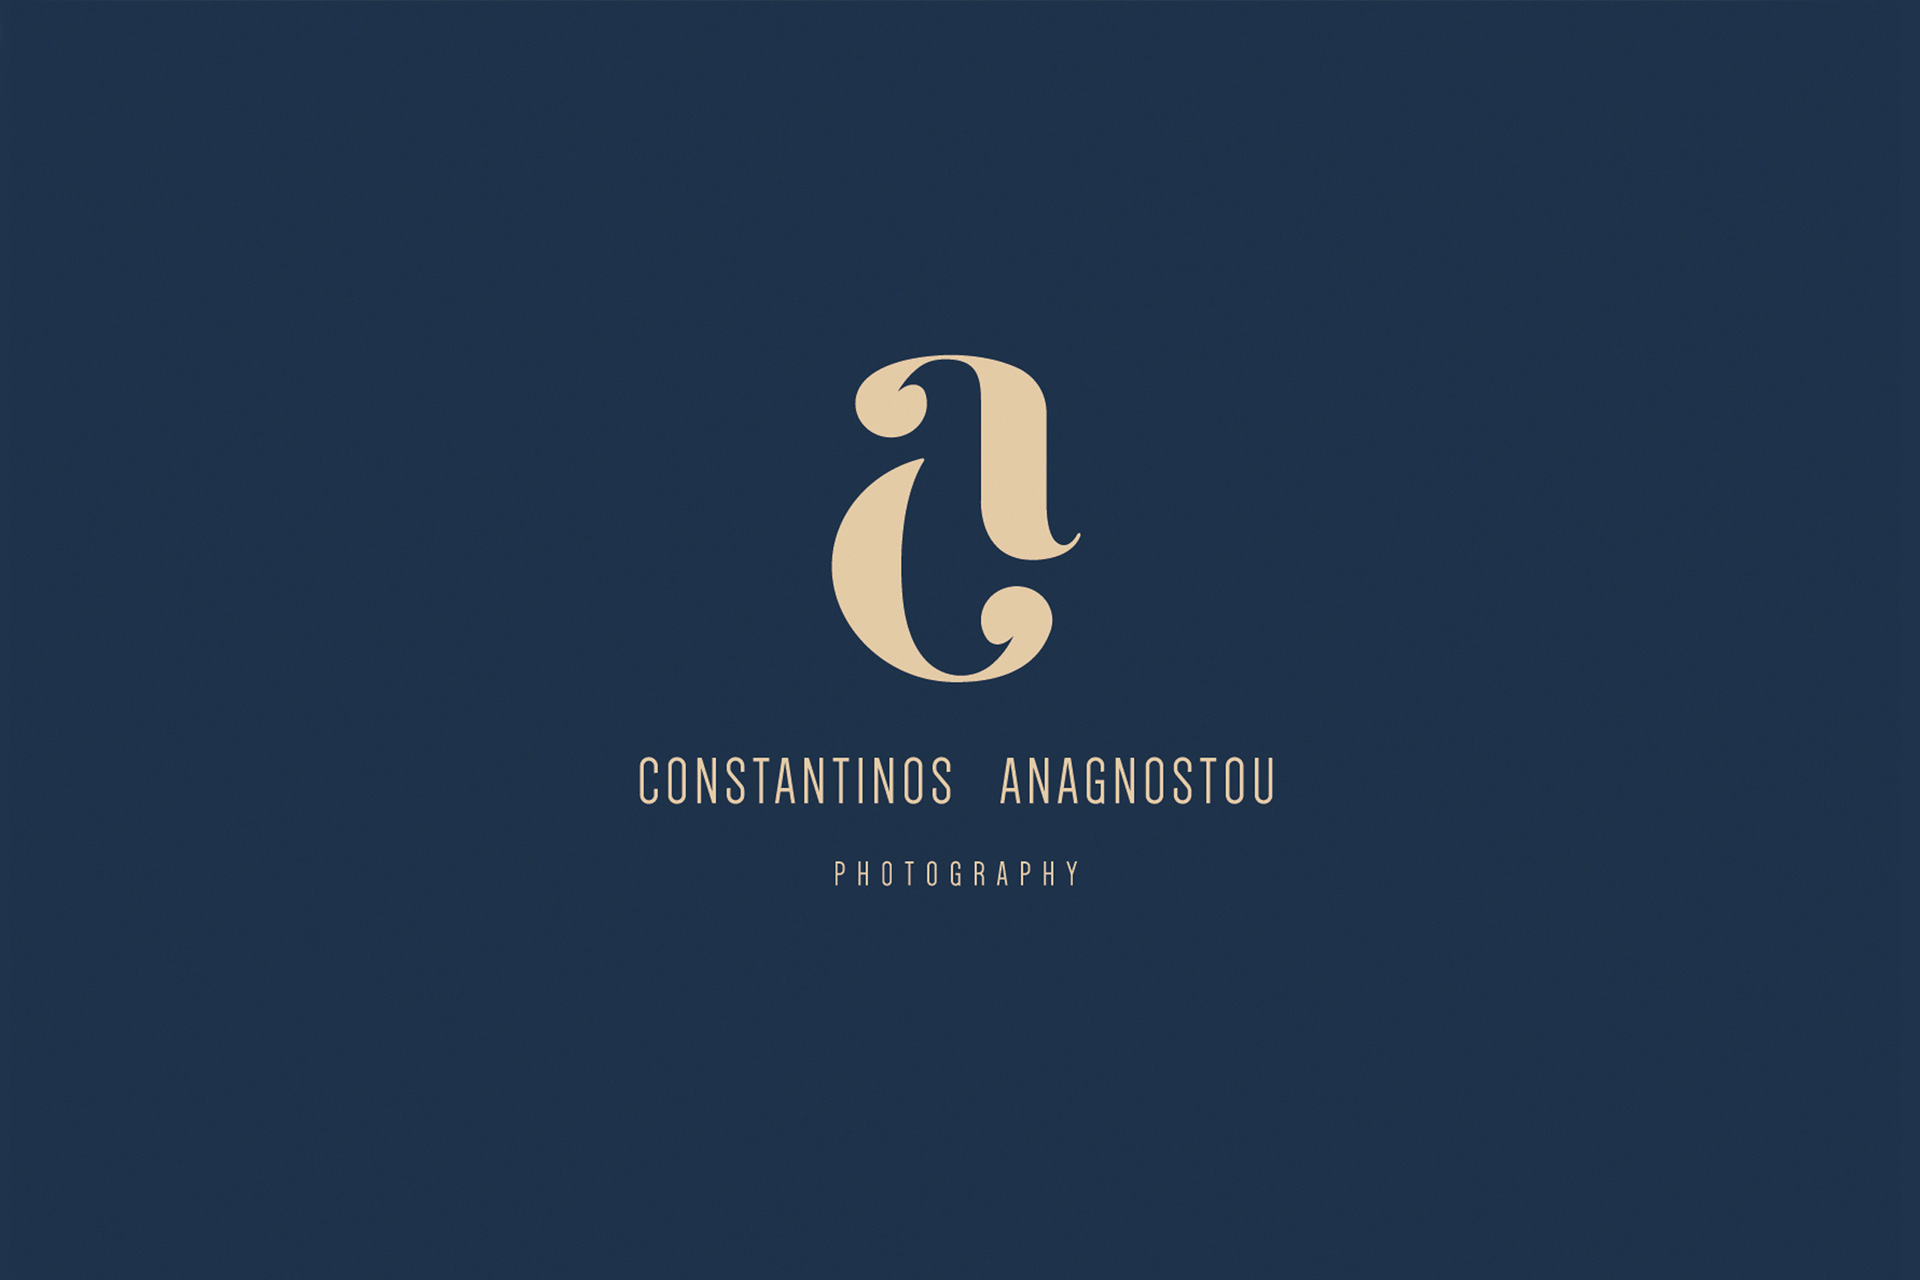 Constantinos Anagnostou